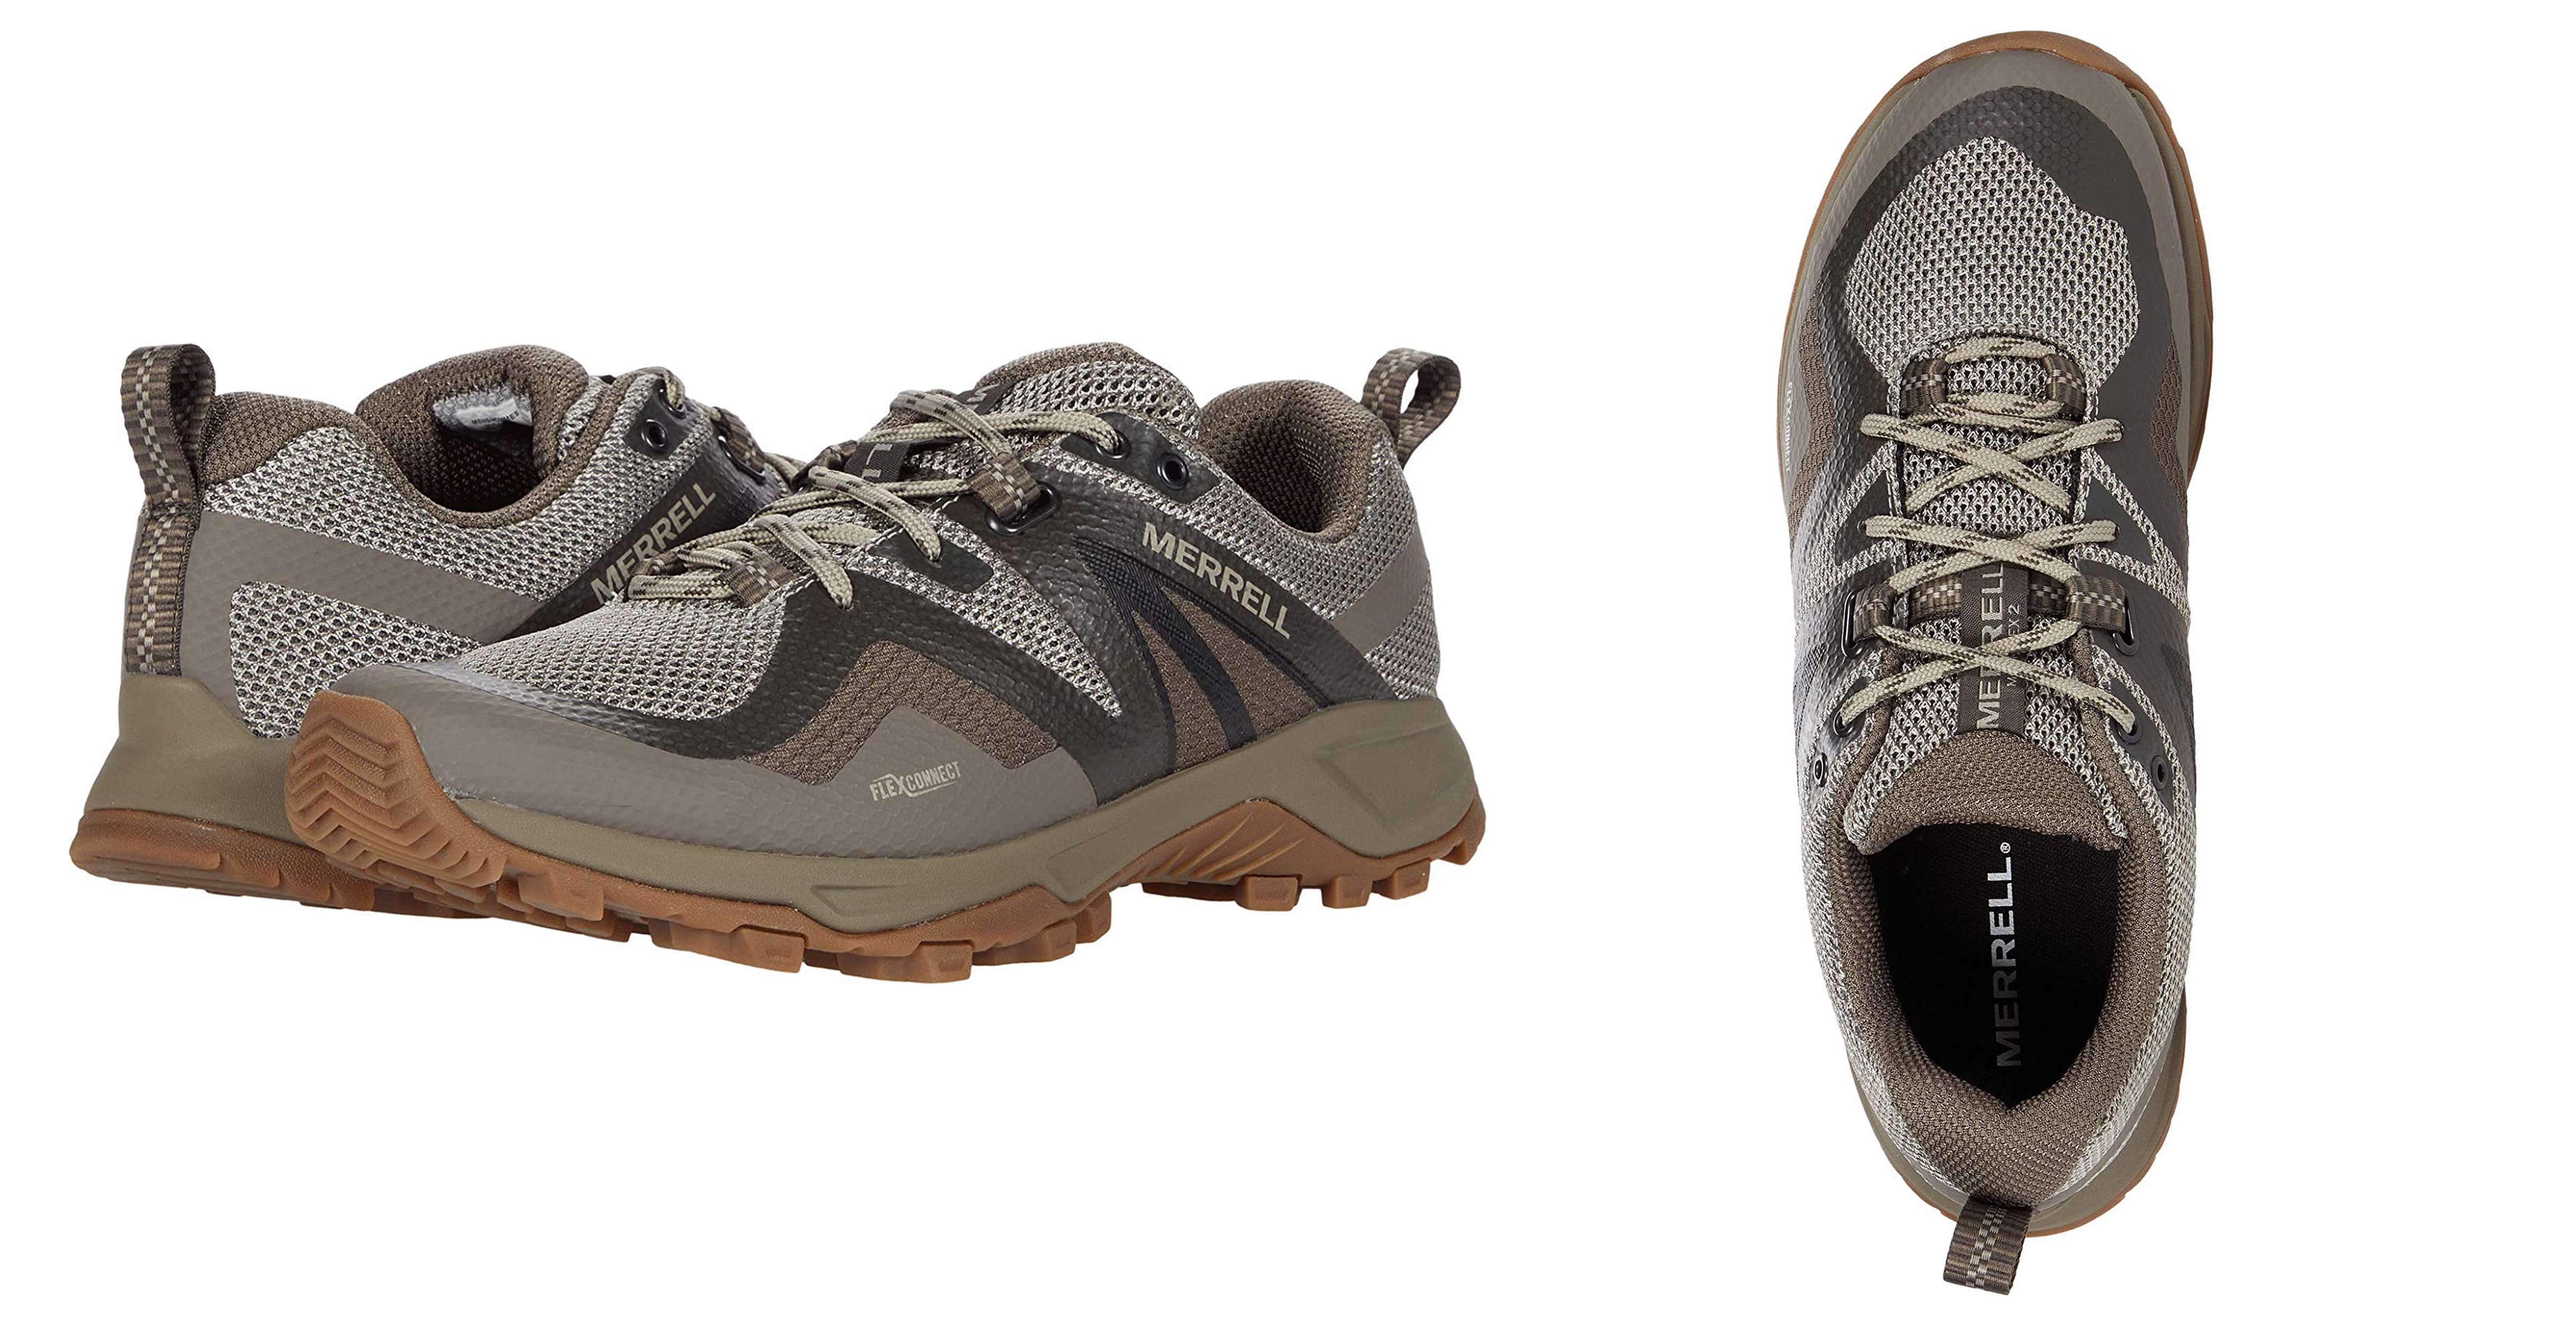 22 zapatos impermeables increíbles para mantener los pies secos - 9